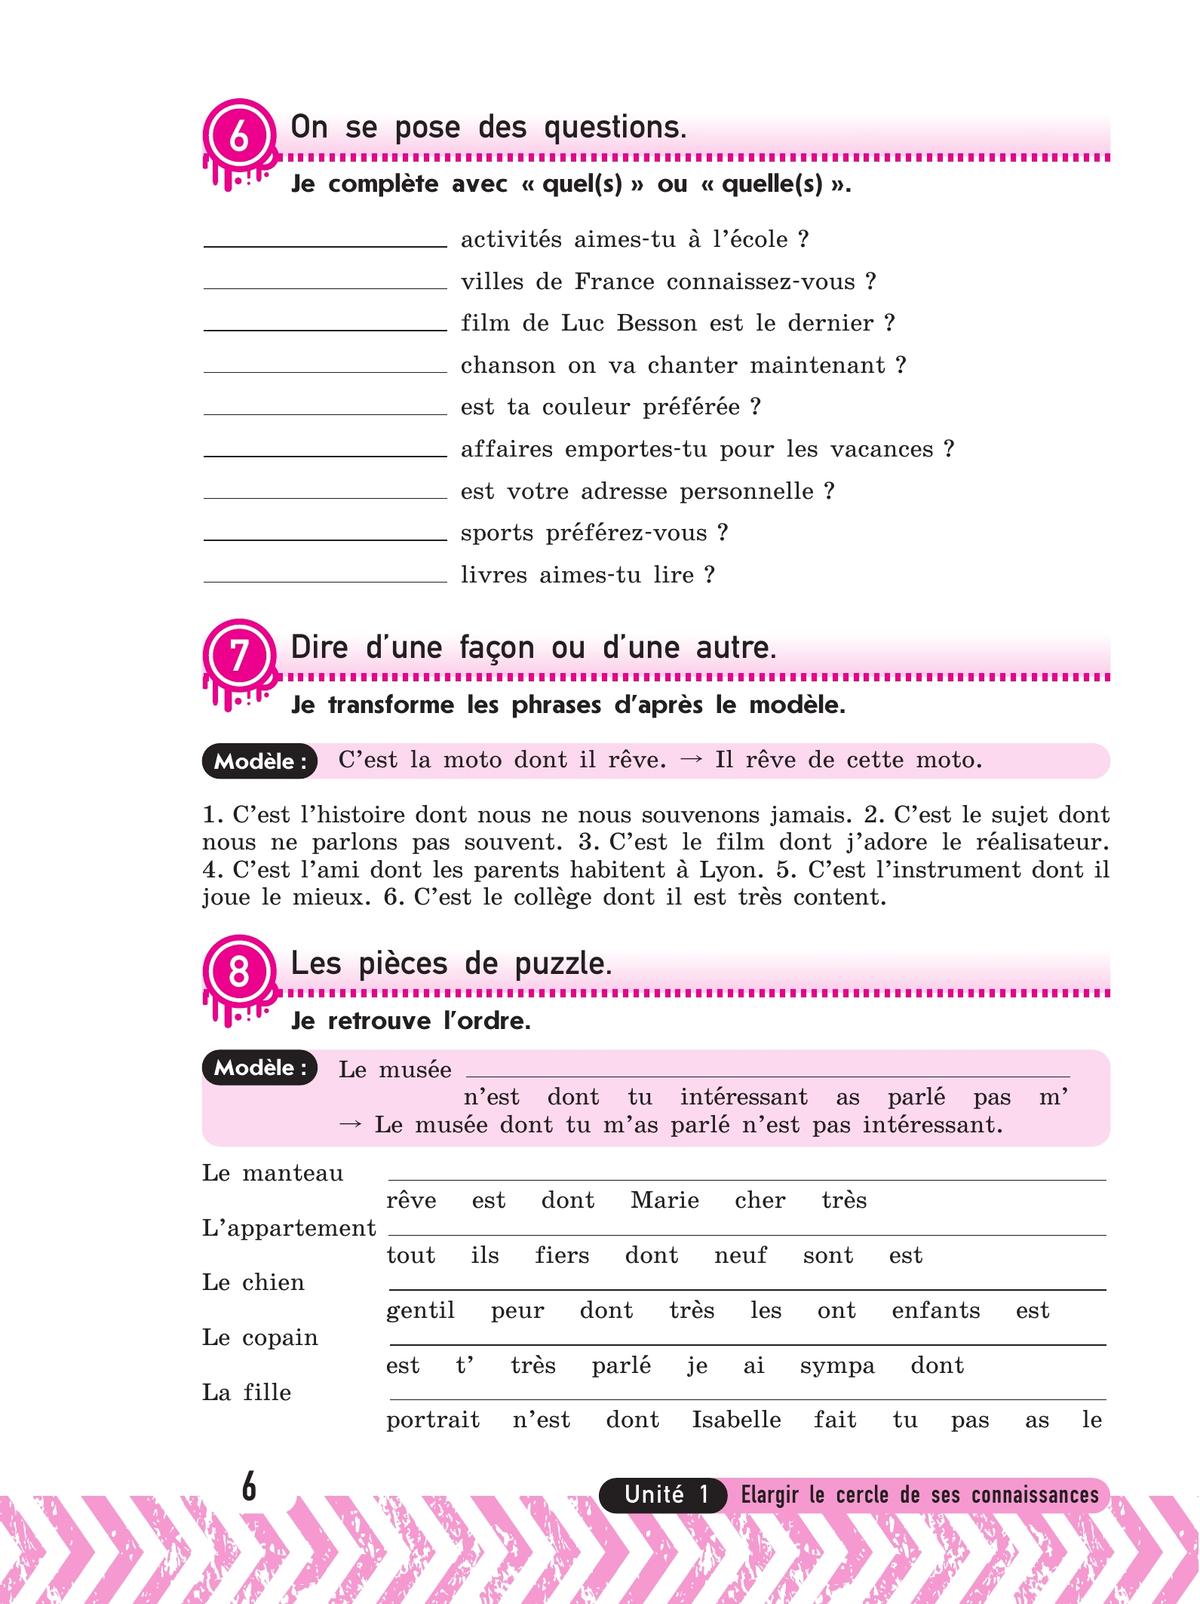 Французский язык. Рабочая тетрадь. 7 класс 2